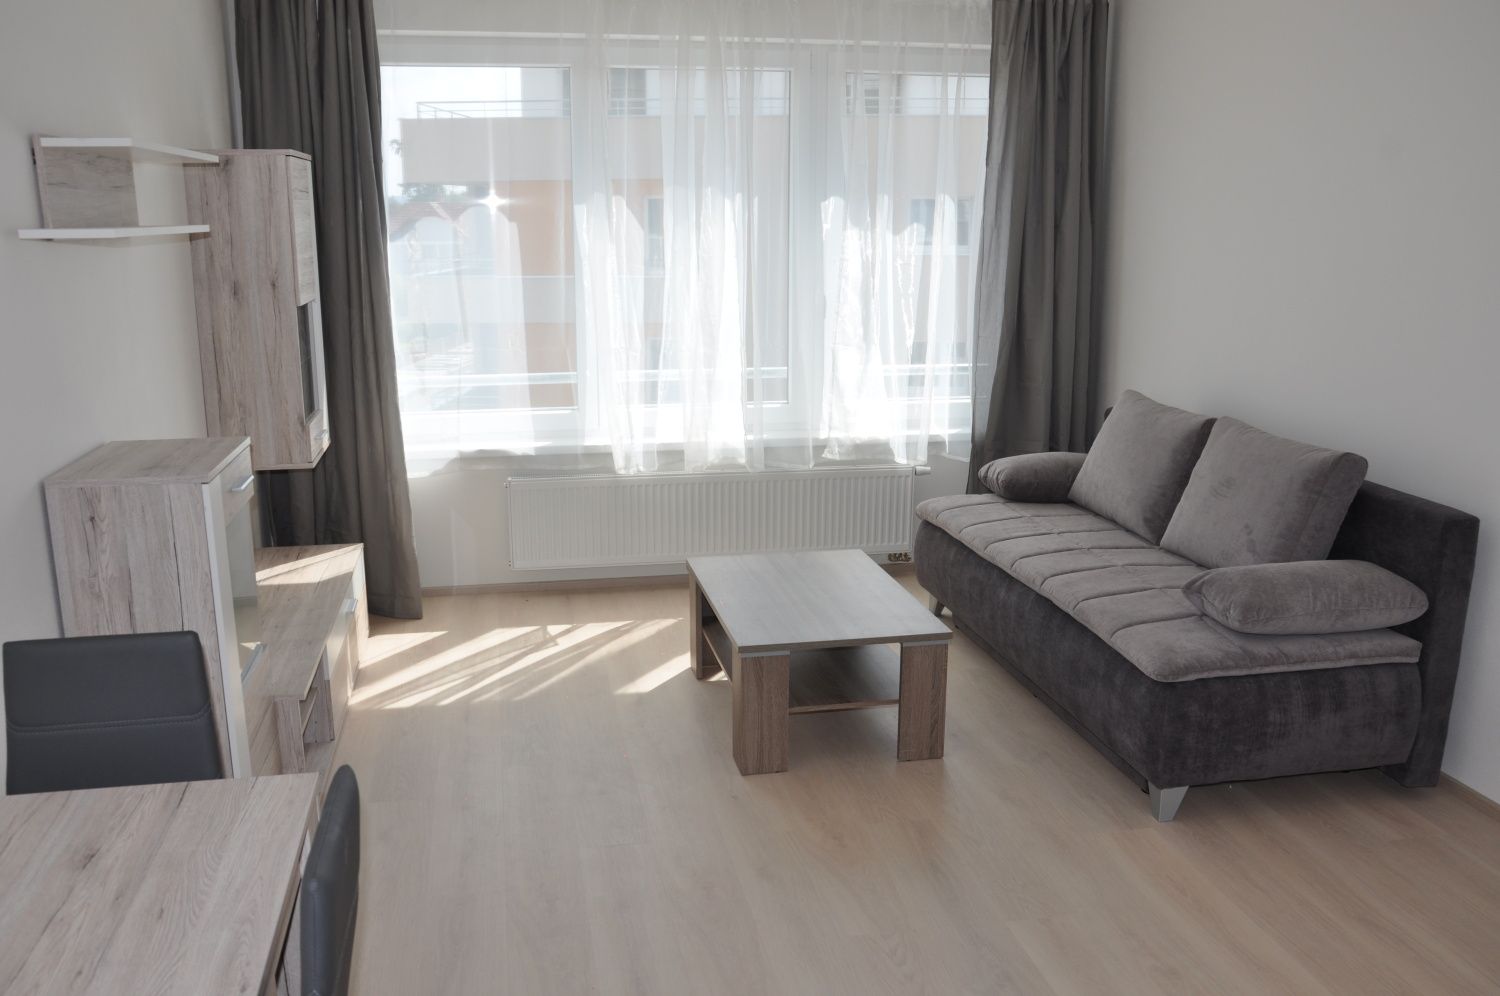 Exkluzivně nabízíme k prodeji byt 1+kk, 33 m2, ve 3. patře novostavby v ulici Nad Volyňkou